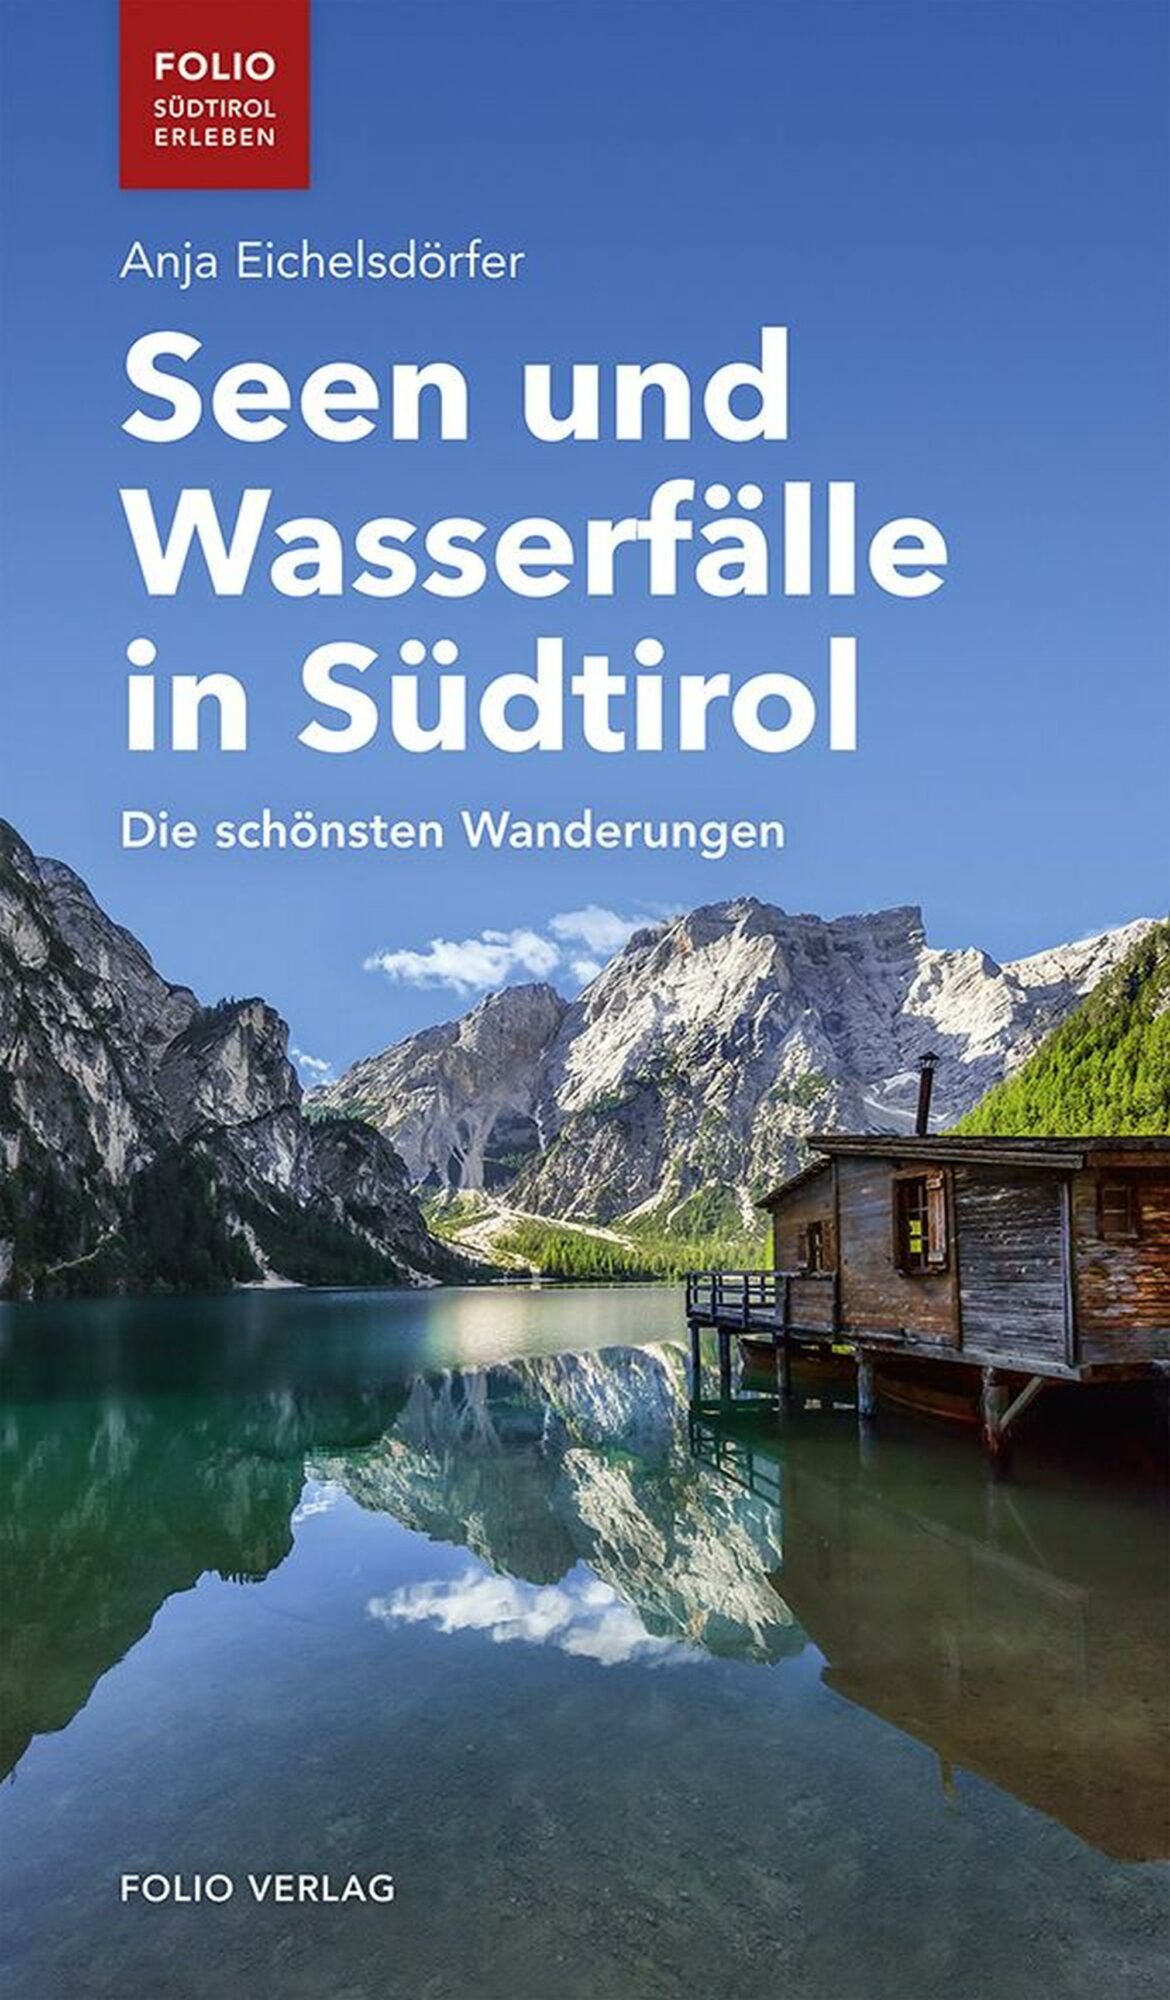 Seen und Wasserfälle in Südtirol (c) FolioVerlag